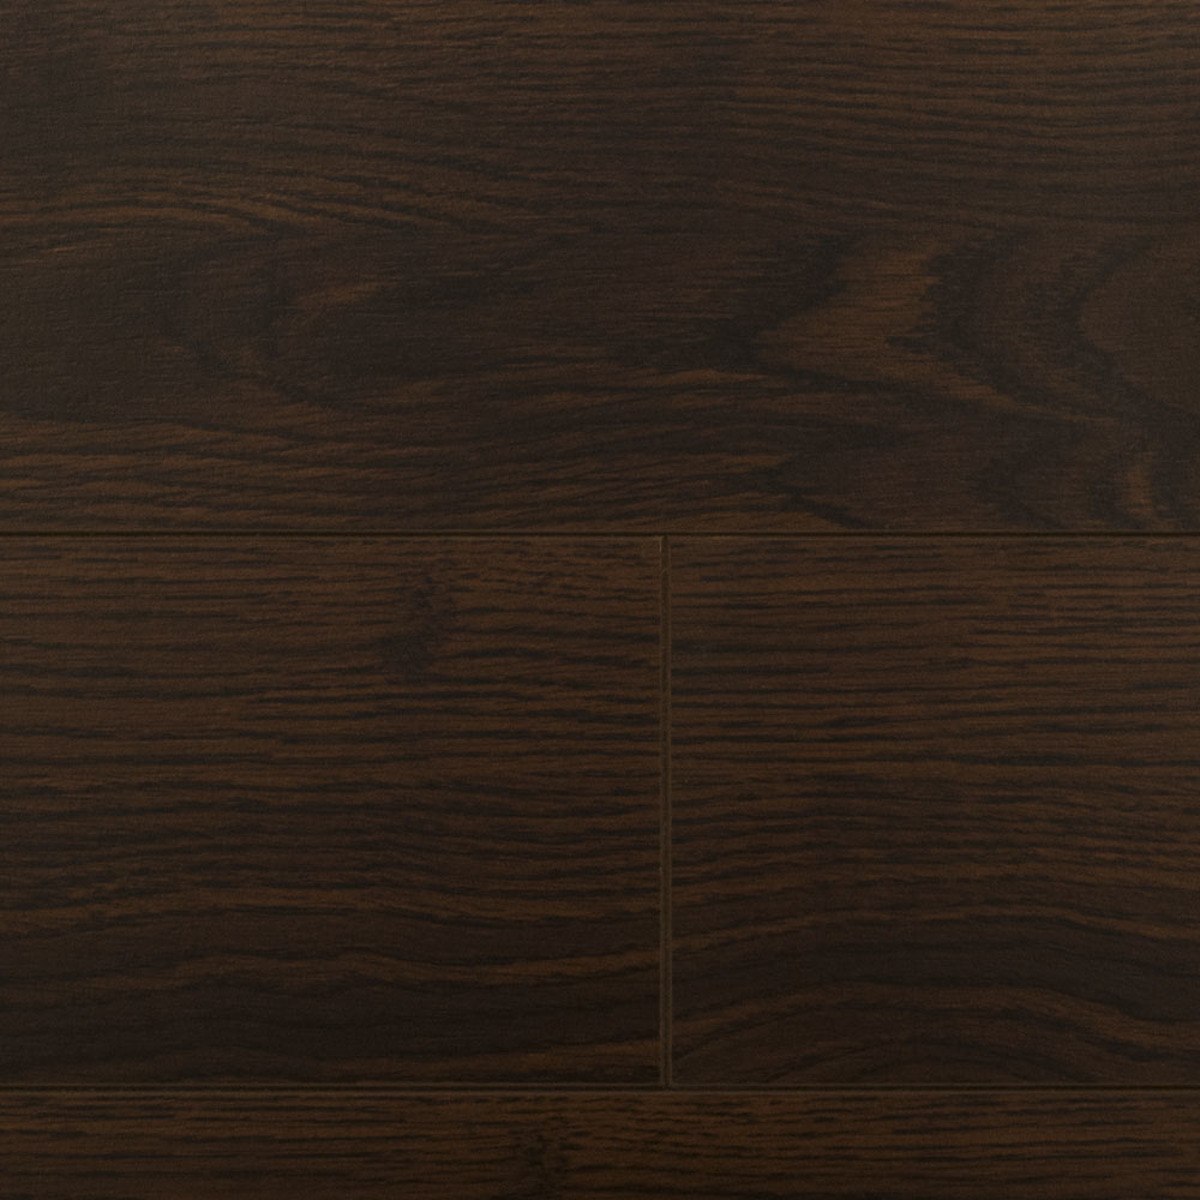 European Oak Laminate Flooring 12 3mm, European Vinyl Flooring